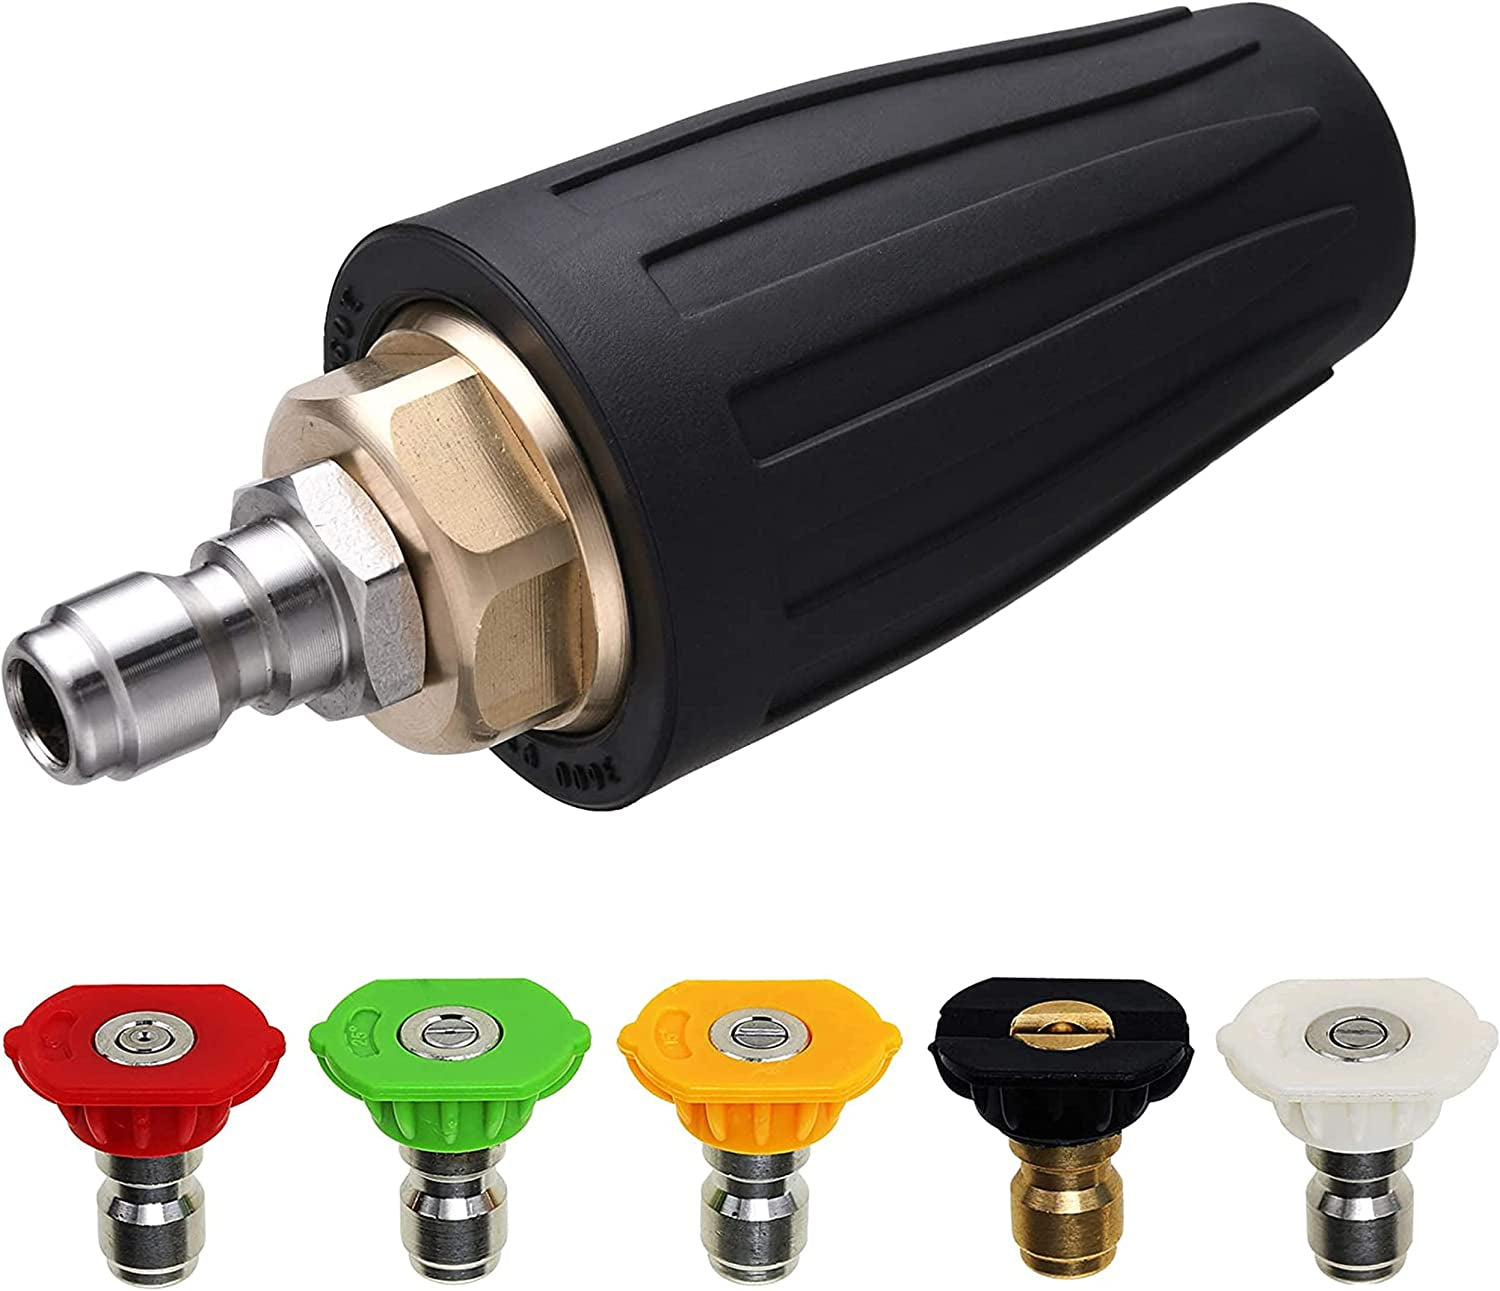 M MINGLE, M MINGLE Turbo Nozzle for Pressure Washer, Rotating Nozzle and 5 Tips, 1/4 Inch Quick Connect, 3600 PSI, Orifice 3.0